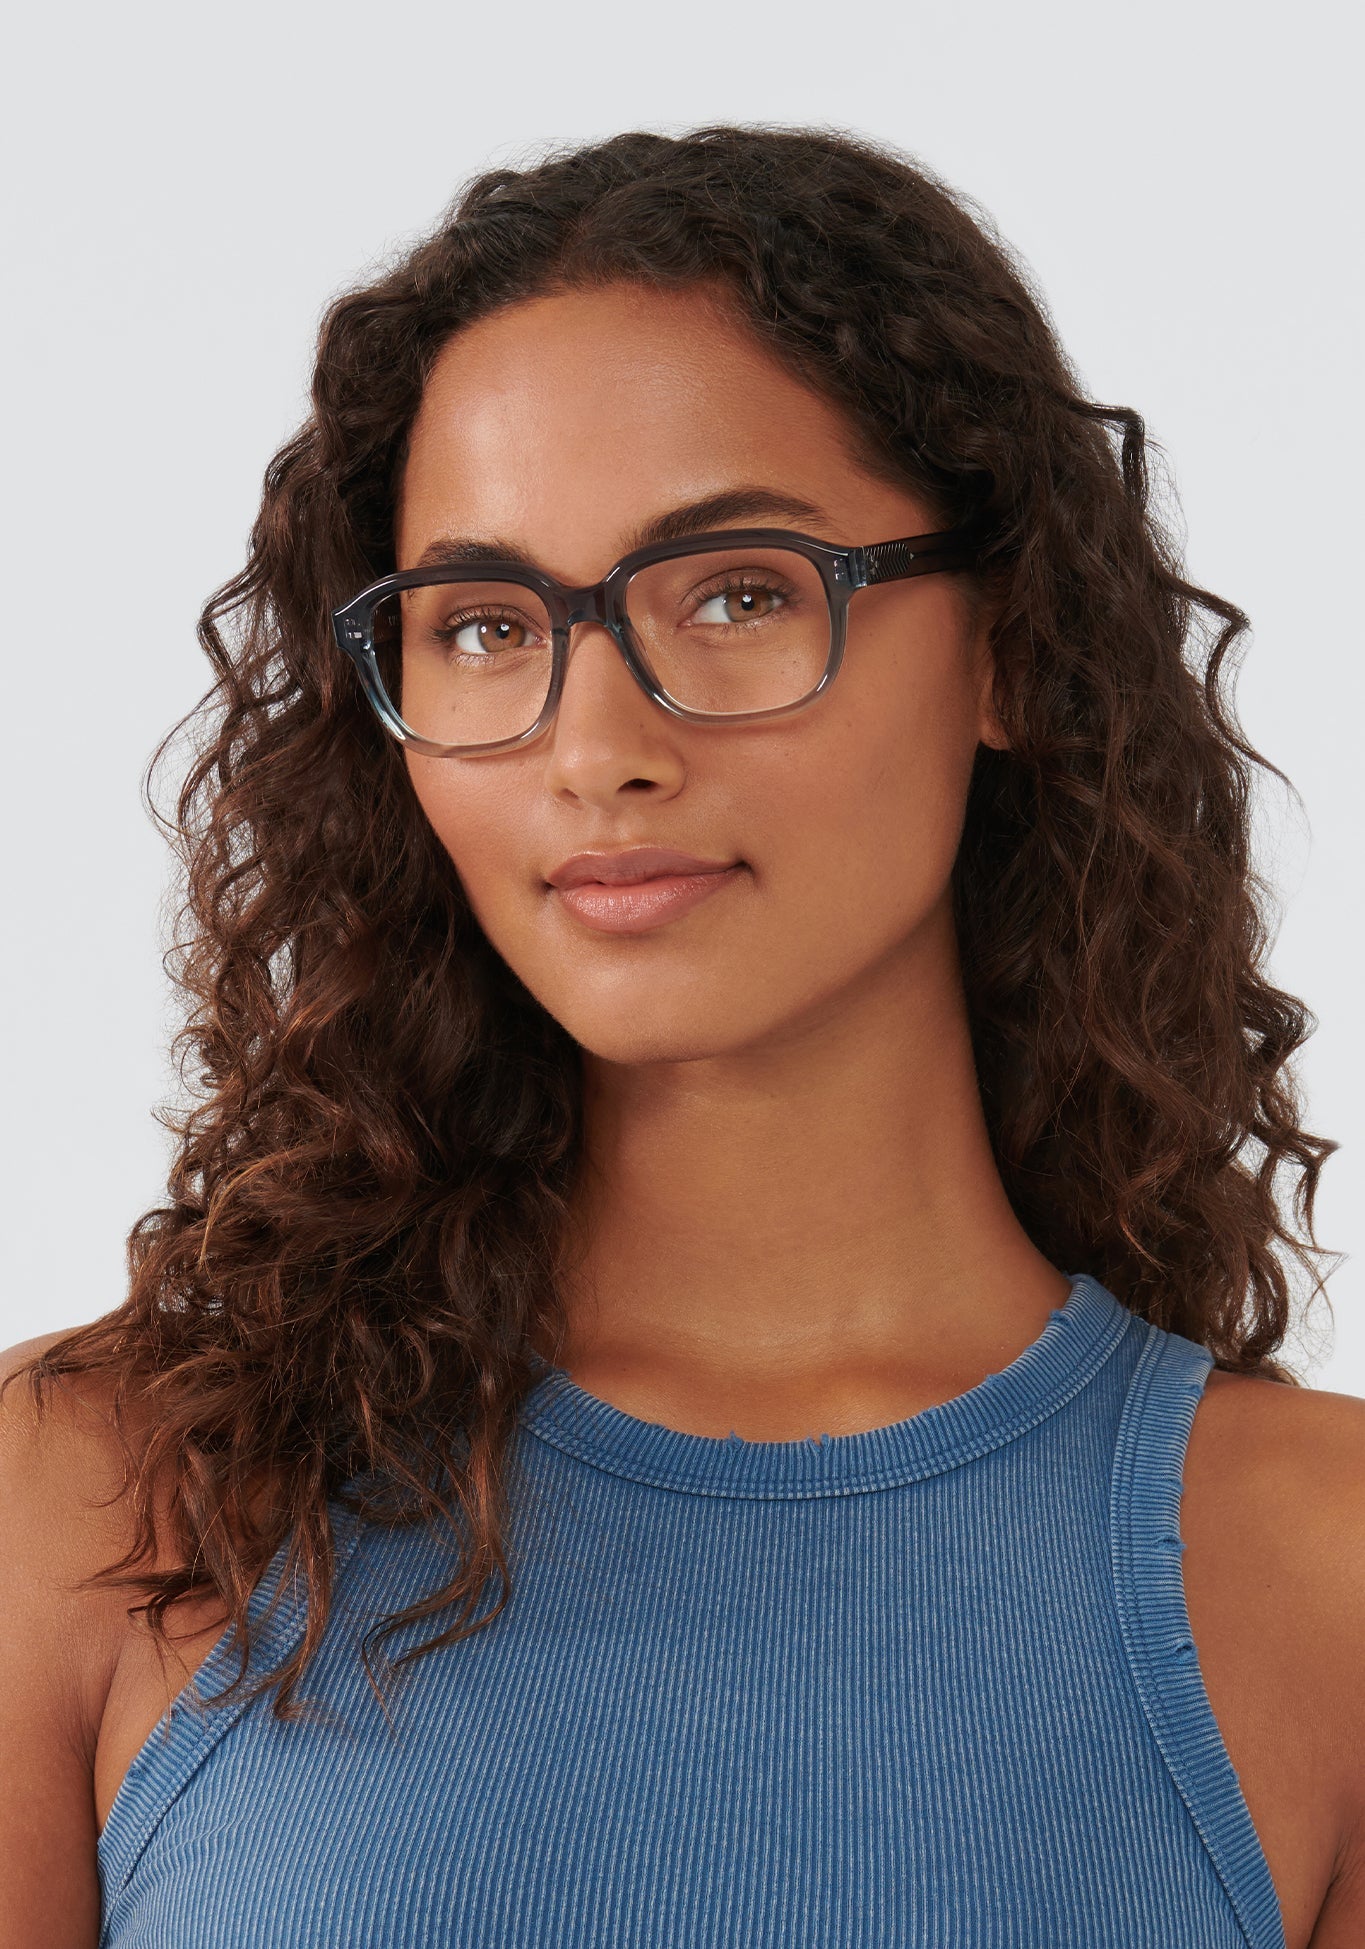 KREWE - NEVILLE | Siren Handcrafted, luxury navy acetate eyeglasses womens model | Model: Meli